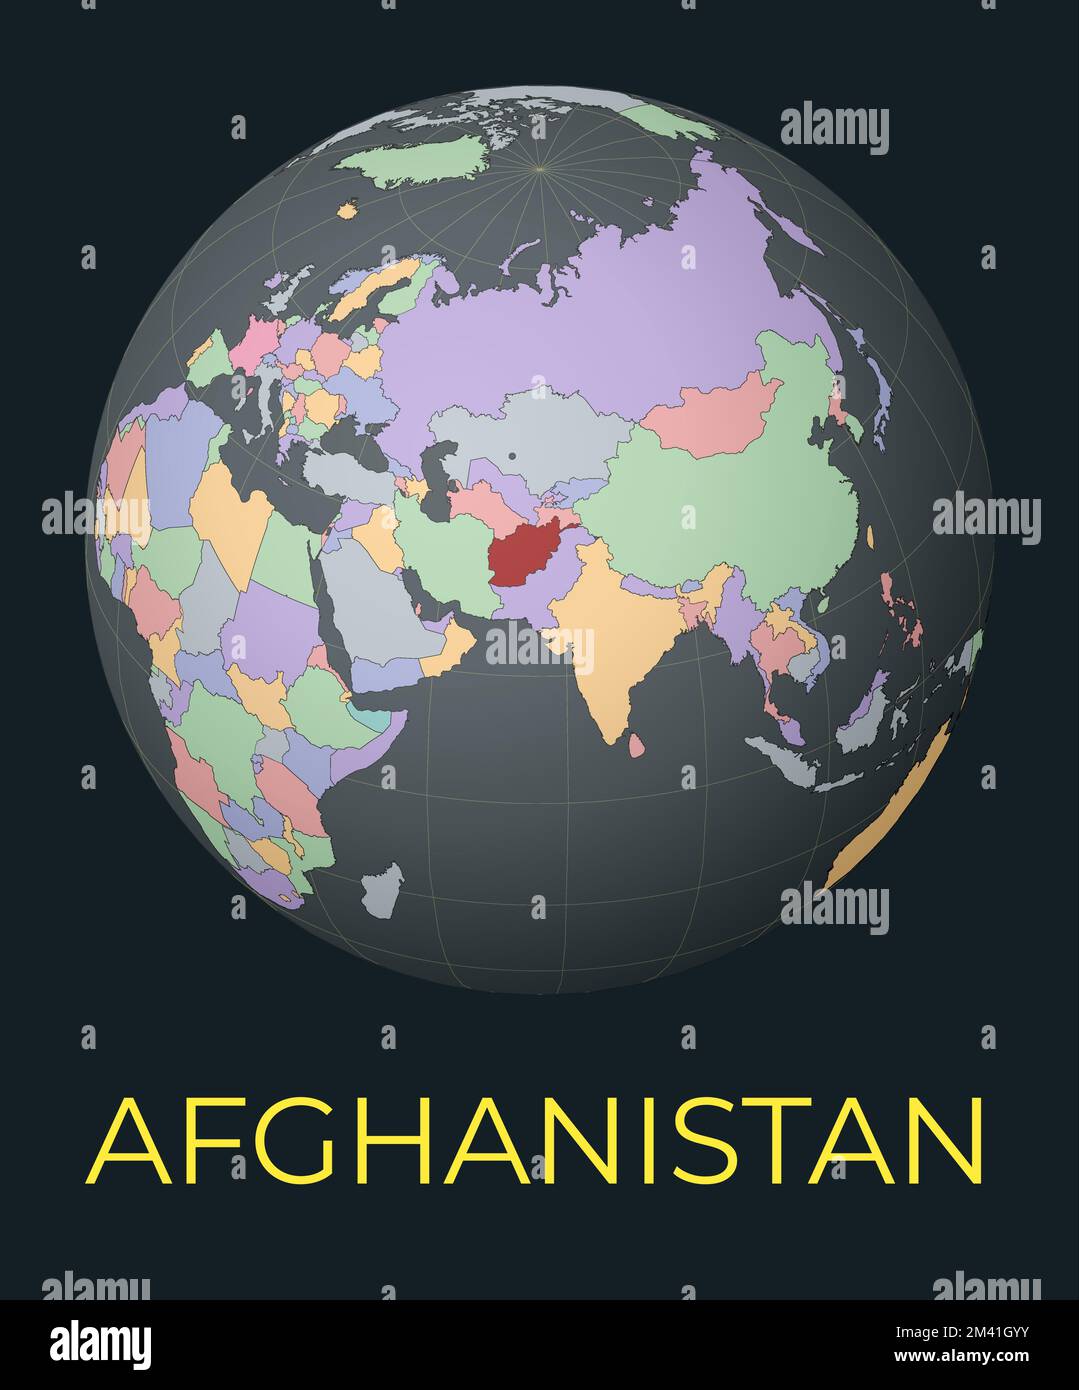 Mappa mondiale centrata sull'Afghanistan. Paese rosso evidenziato. Vista del mondo satellite centrata sul paese con il nome. Illustrazione vettoriale. Illustrazione Vettoriale